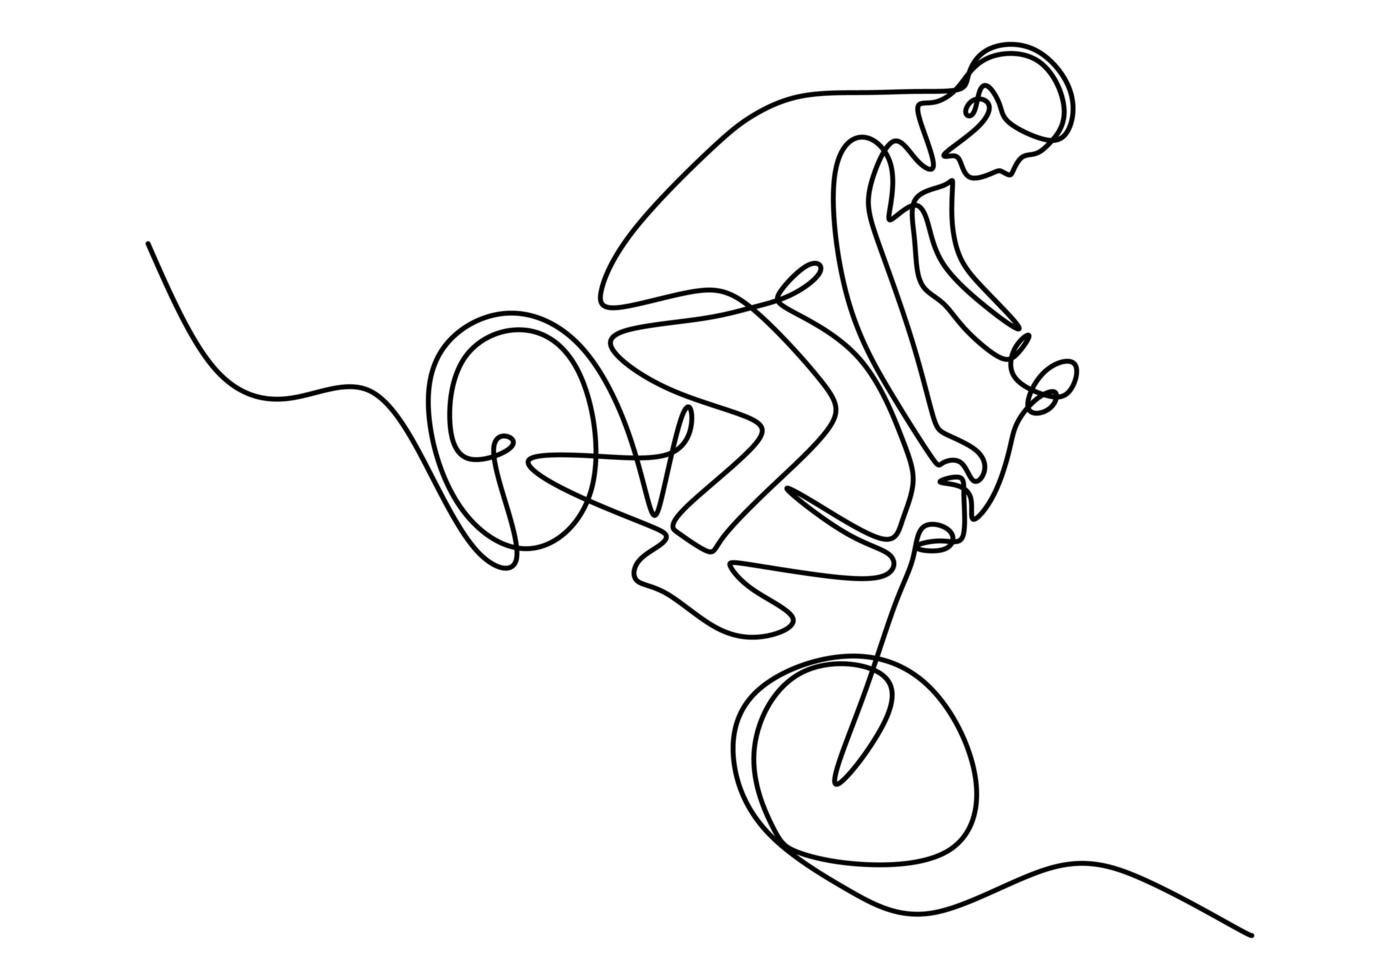 Un solo dibujo de línea continua de un ciclista joven muestra un truco de riesgo extremo de estilo libre. vector